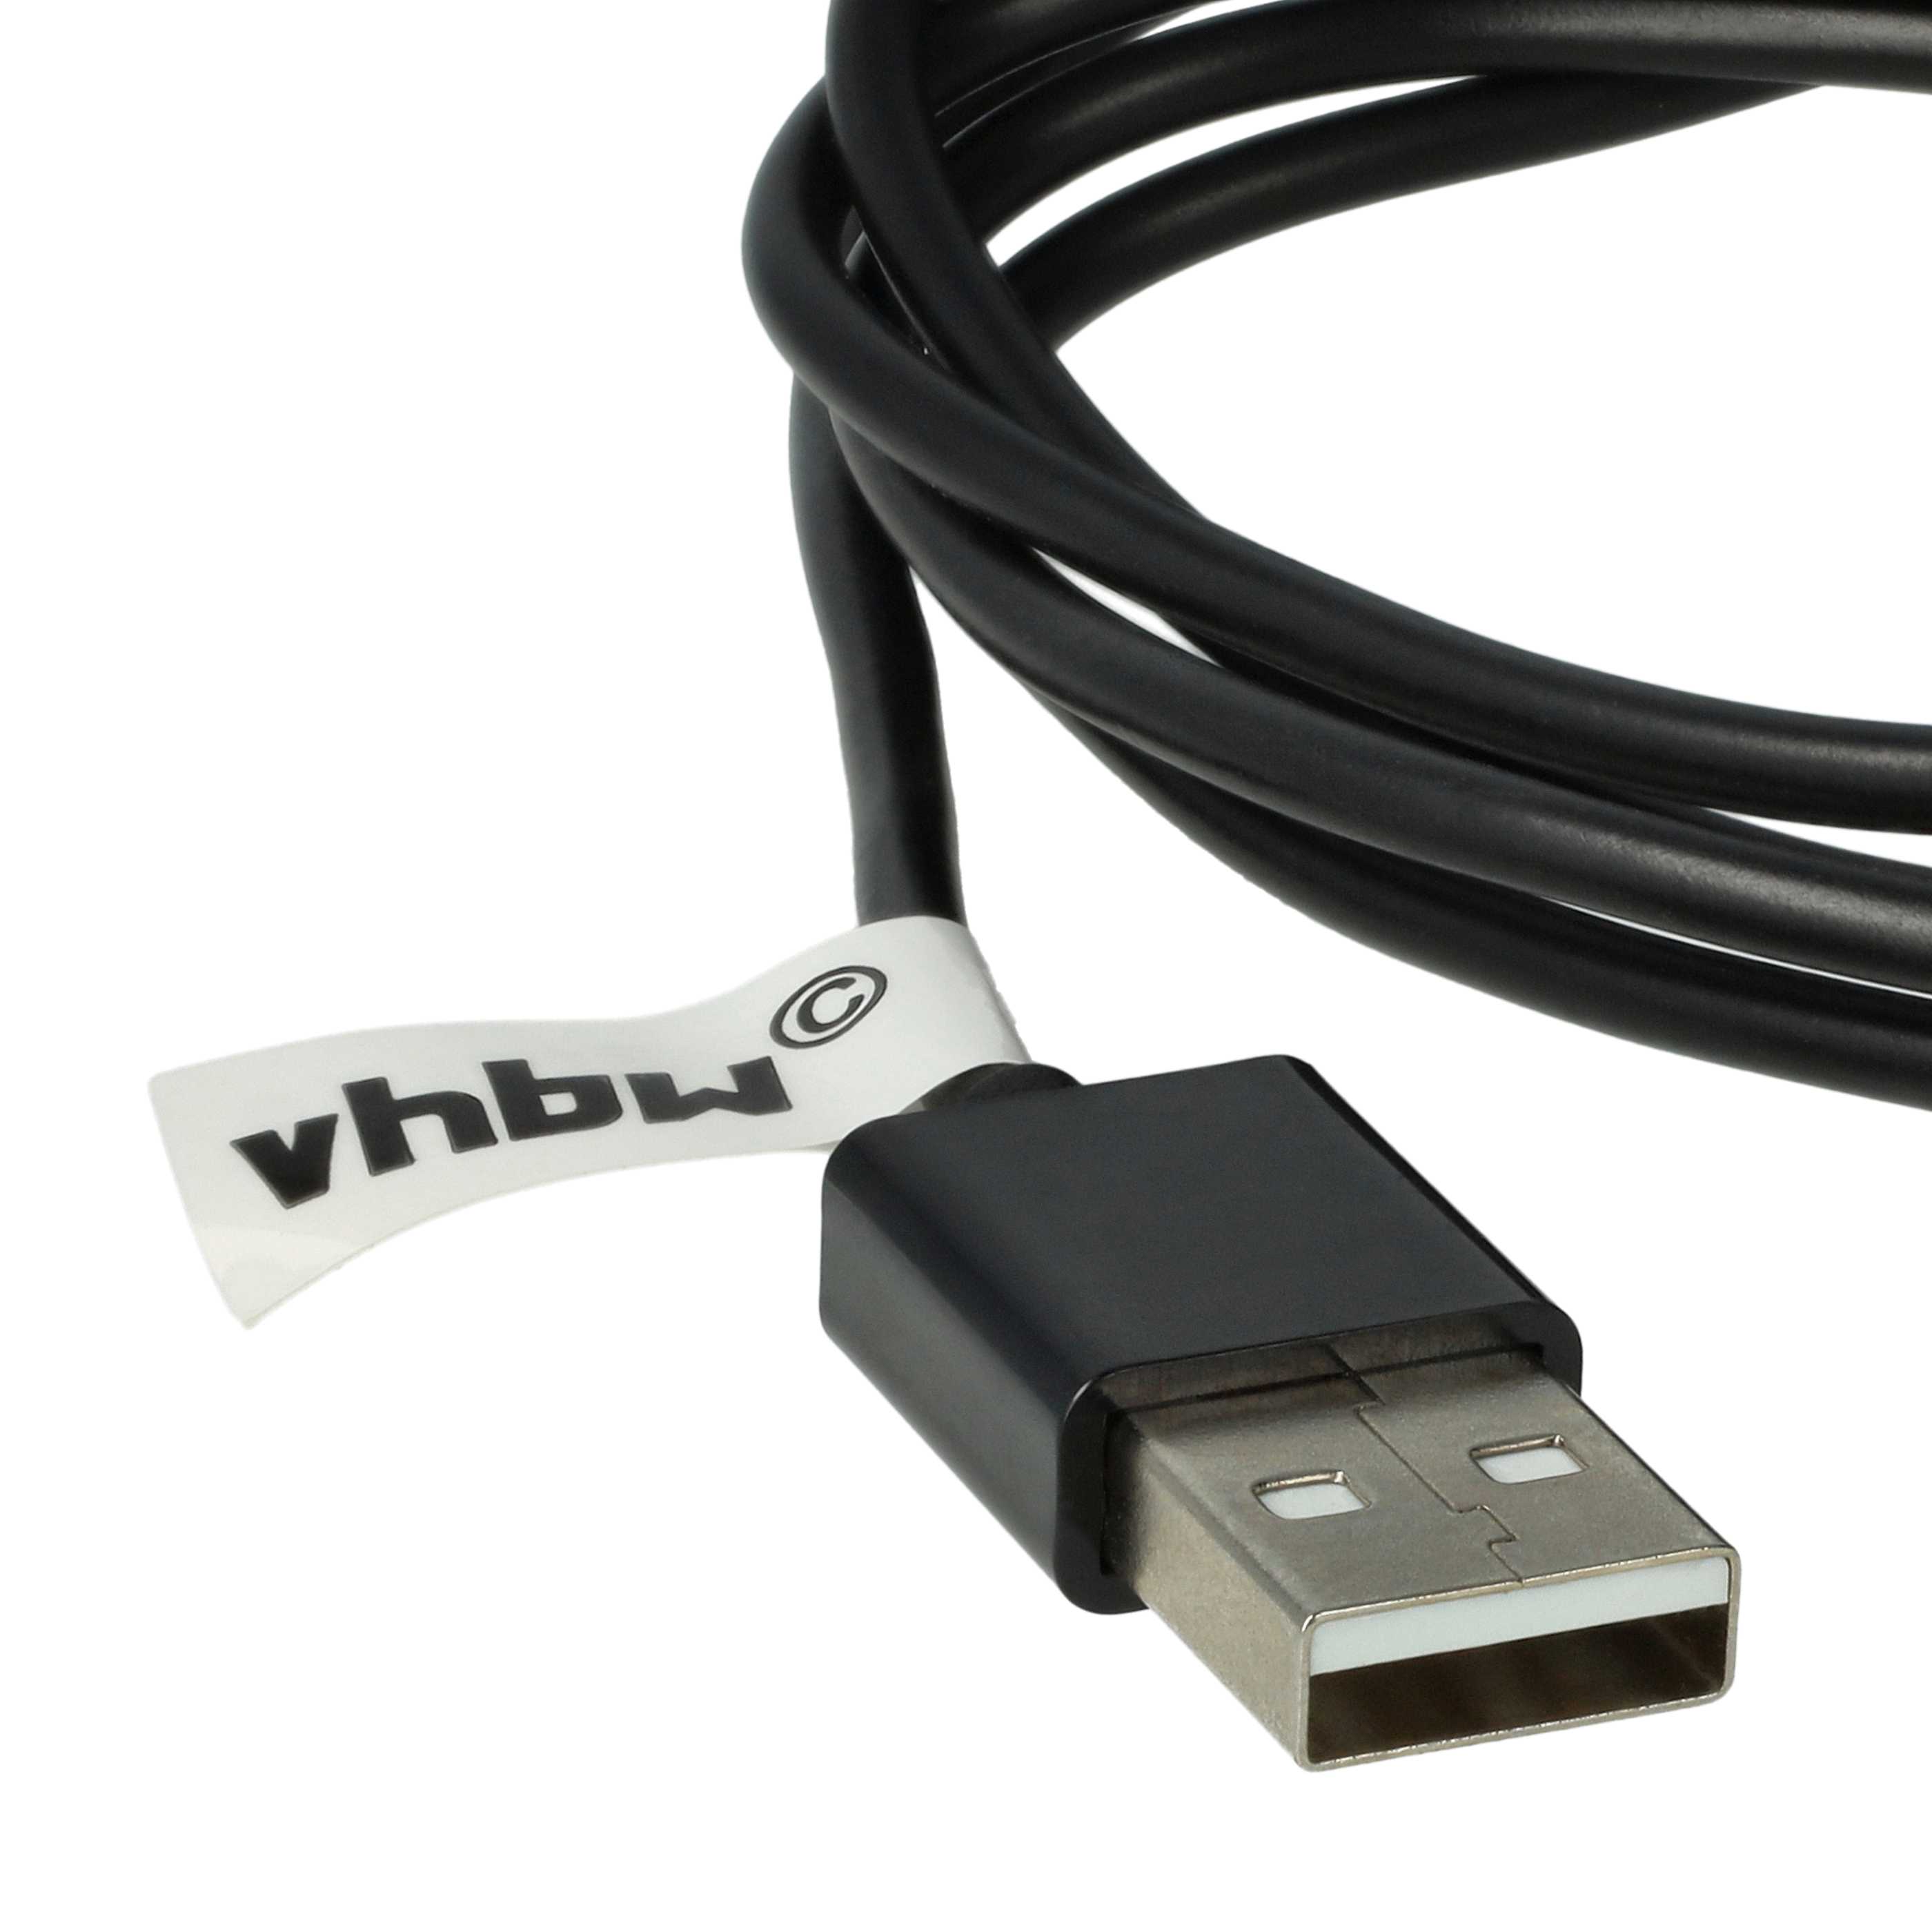 USB Ladekabel als Ersatz für Samsung ECC1DPU für Samsung Tablet